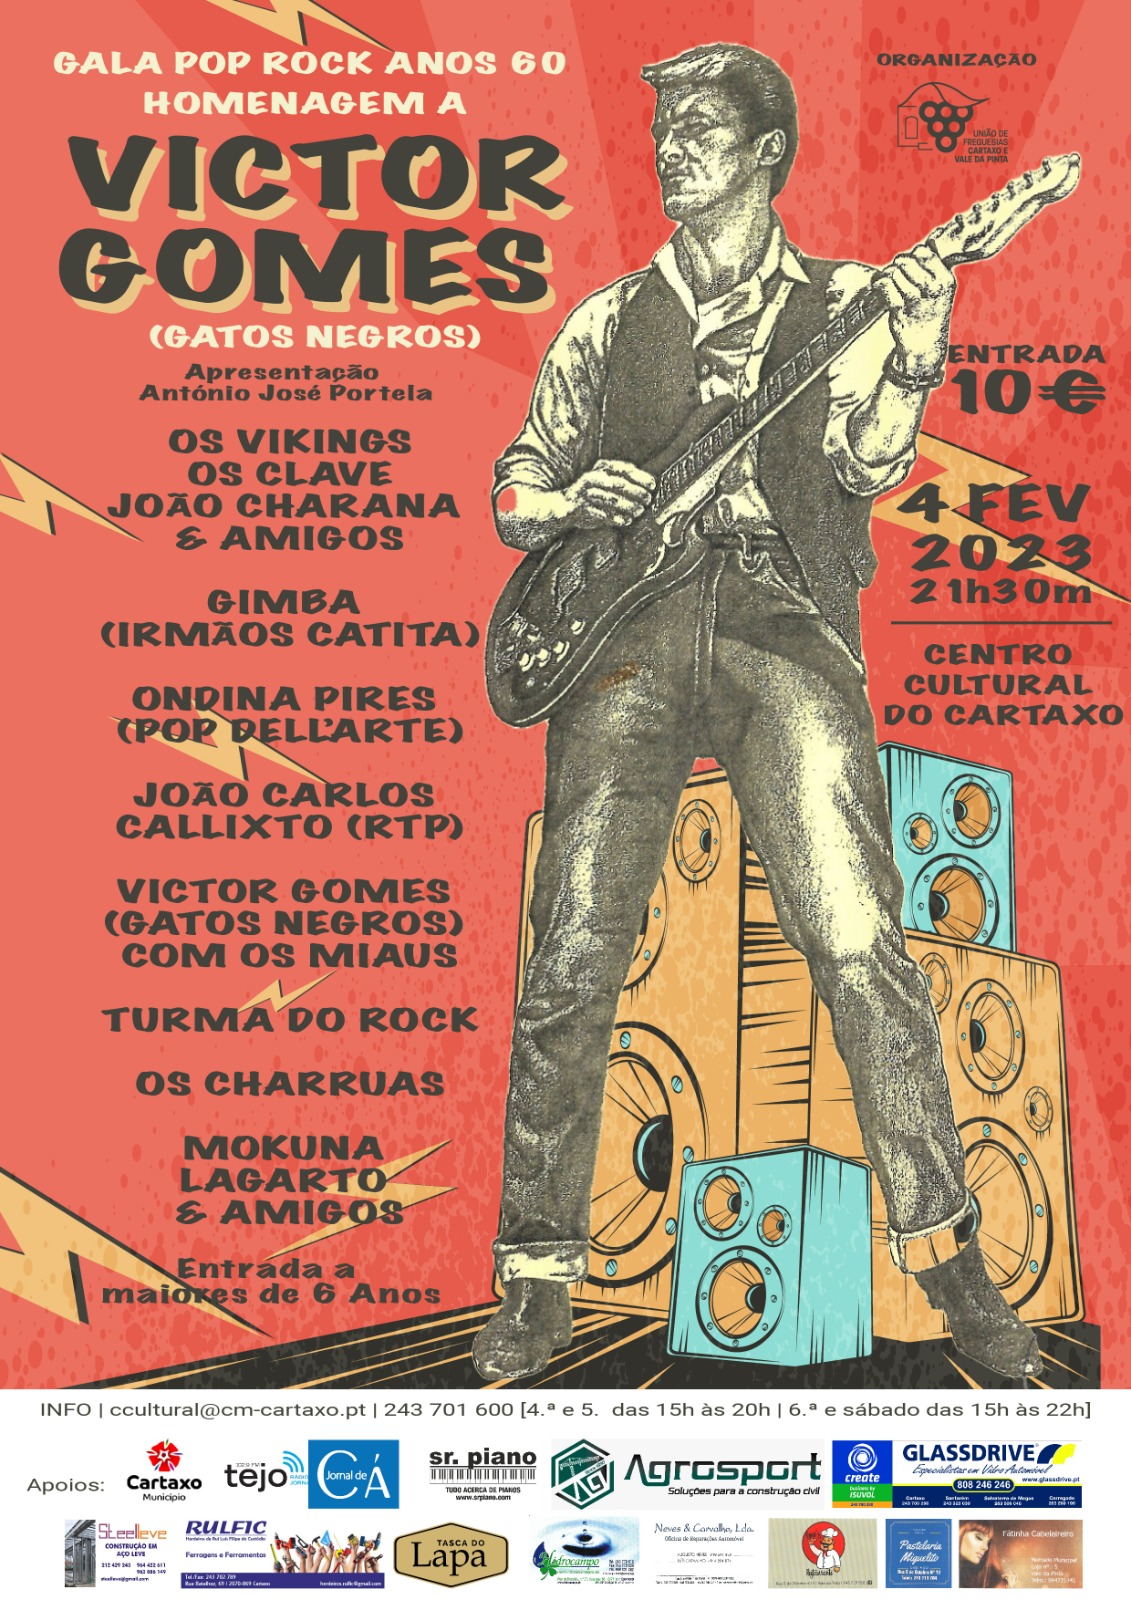 Gala Pop Rock anos 60 - Homenagem a Victor Gomes